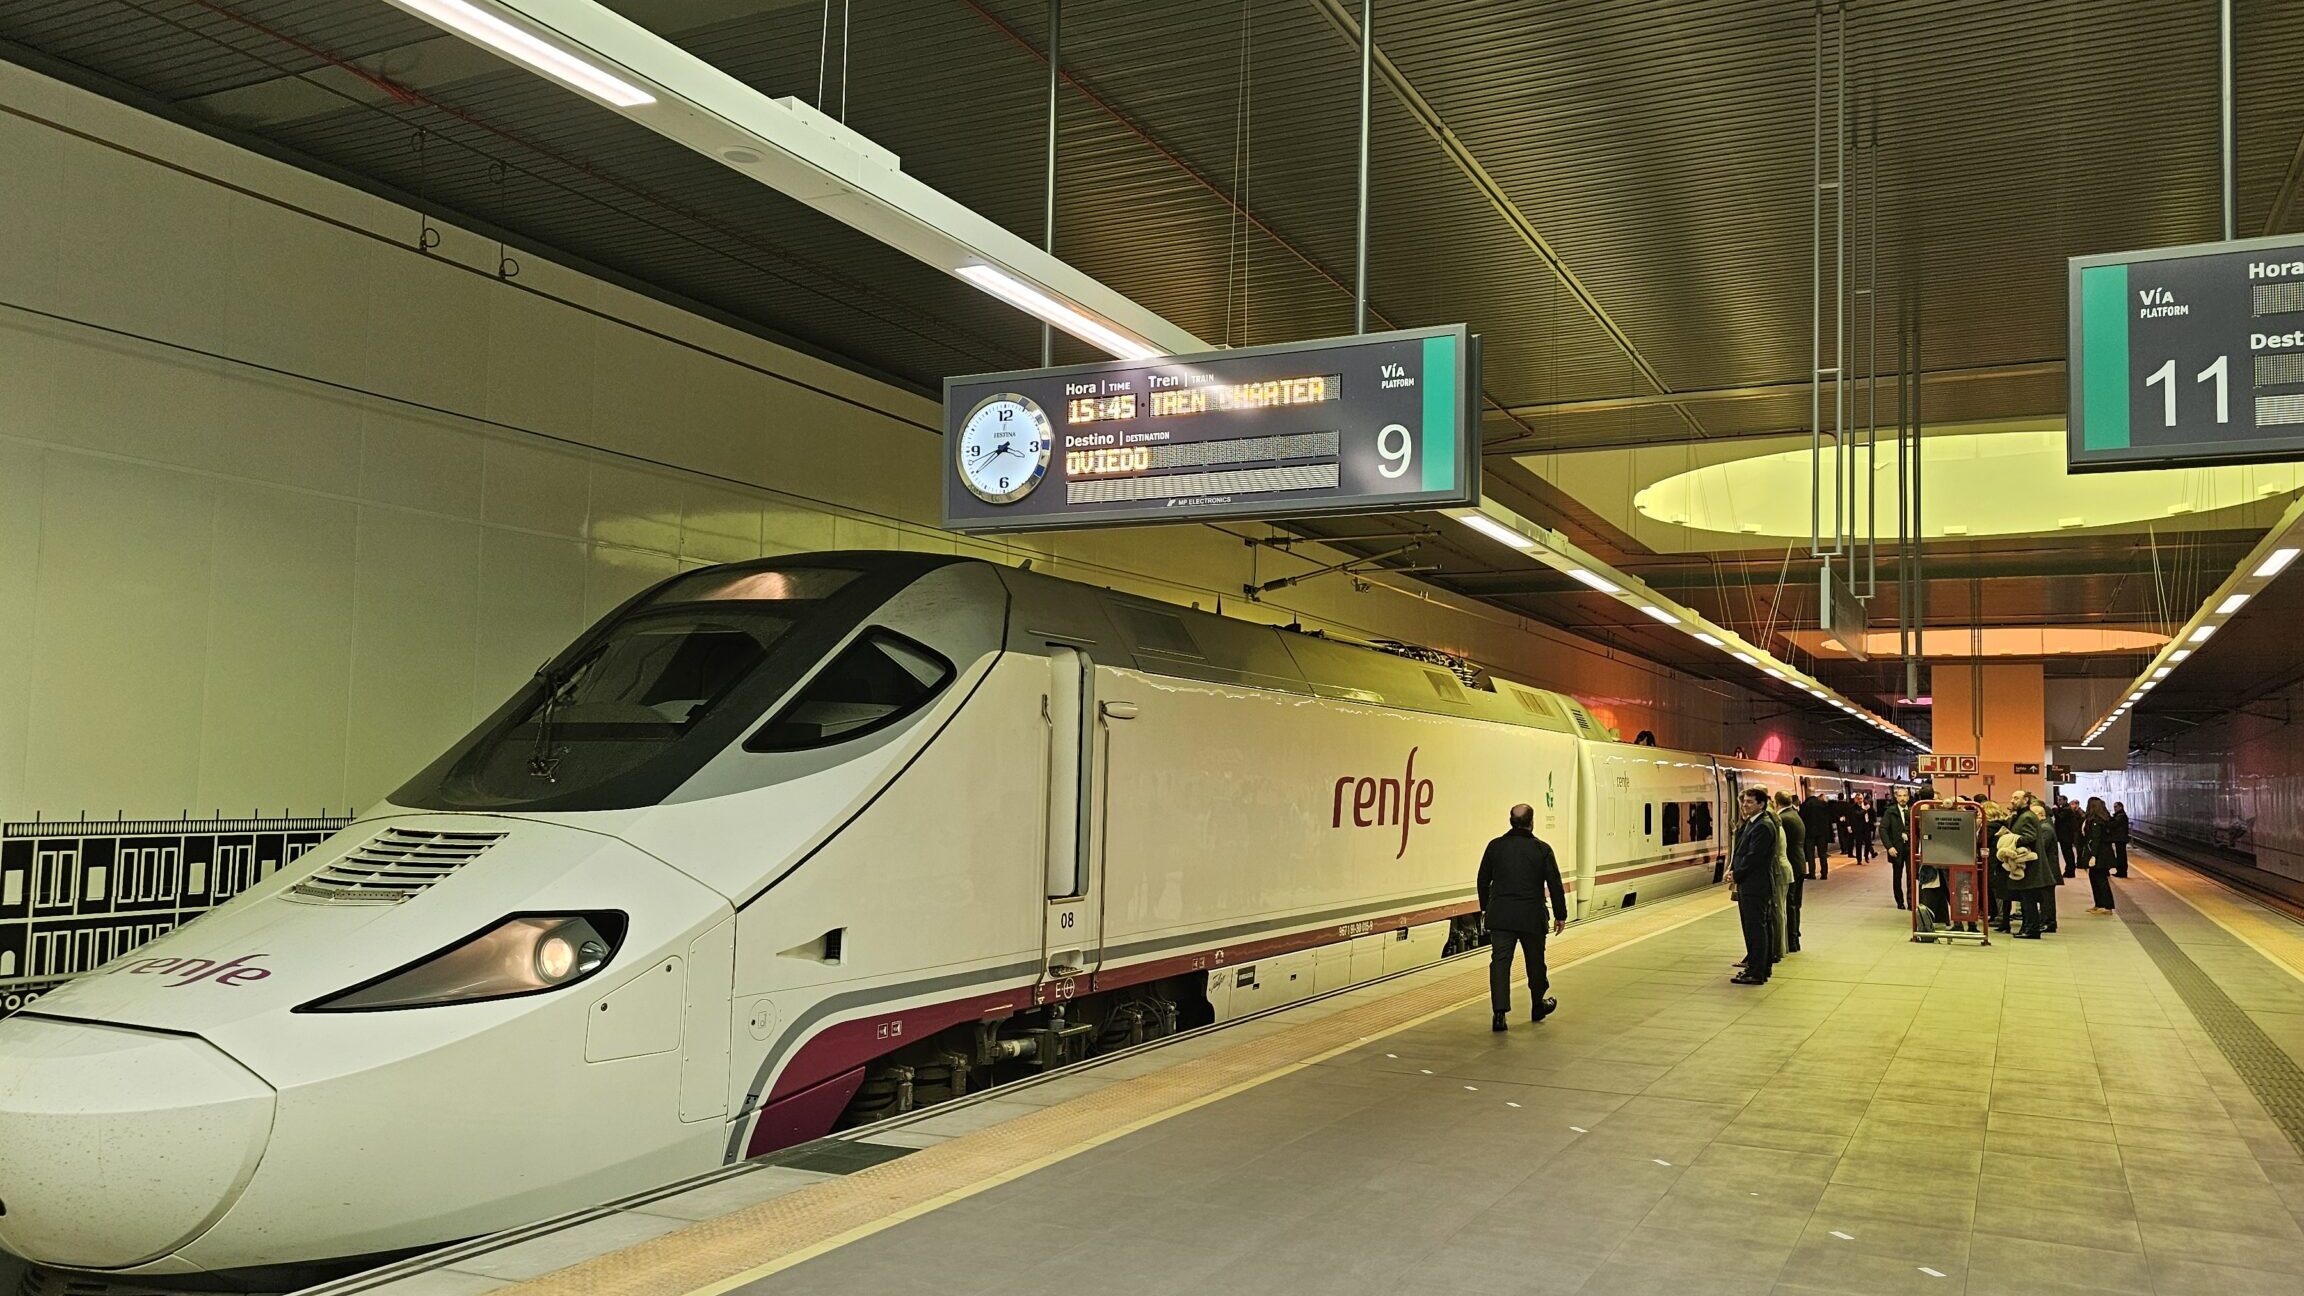 La red de trenes de Madrid: Conexiones ferroviarias en la capital española